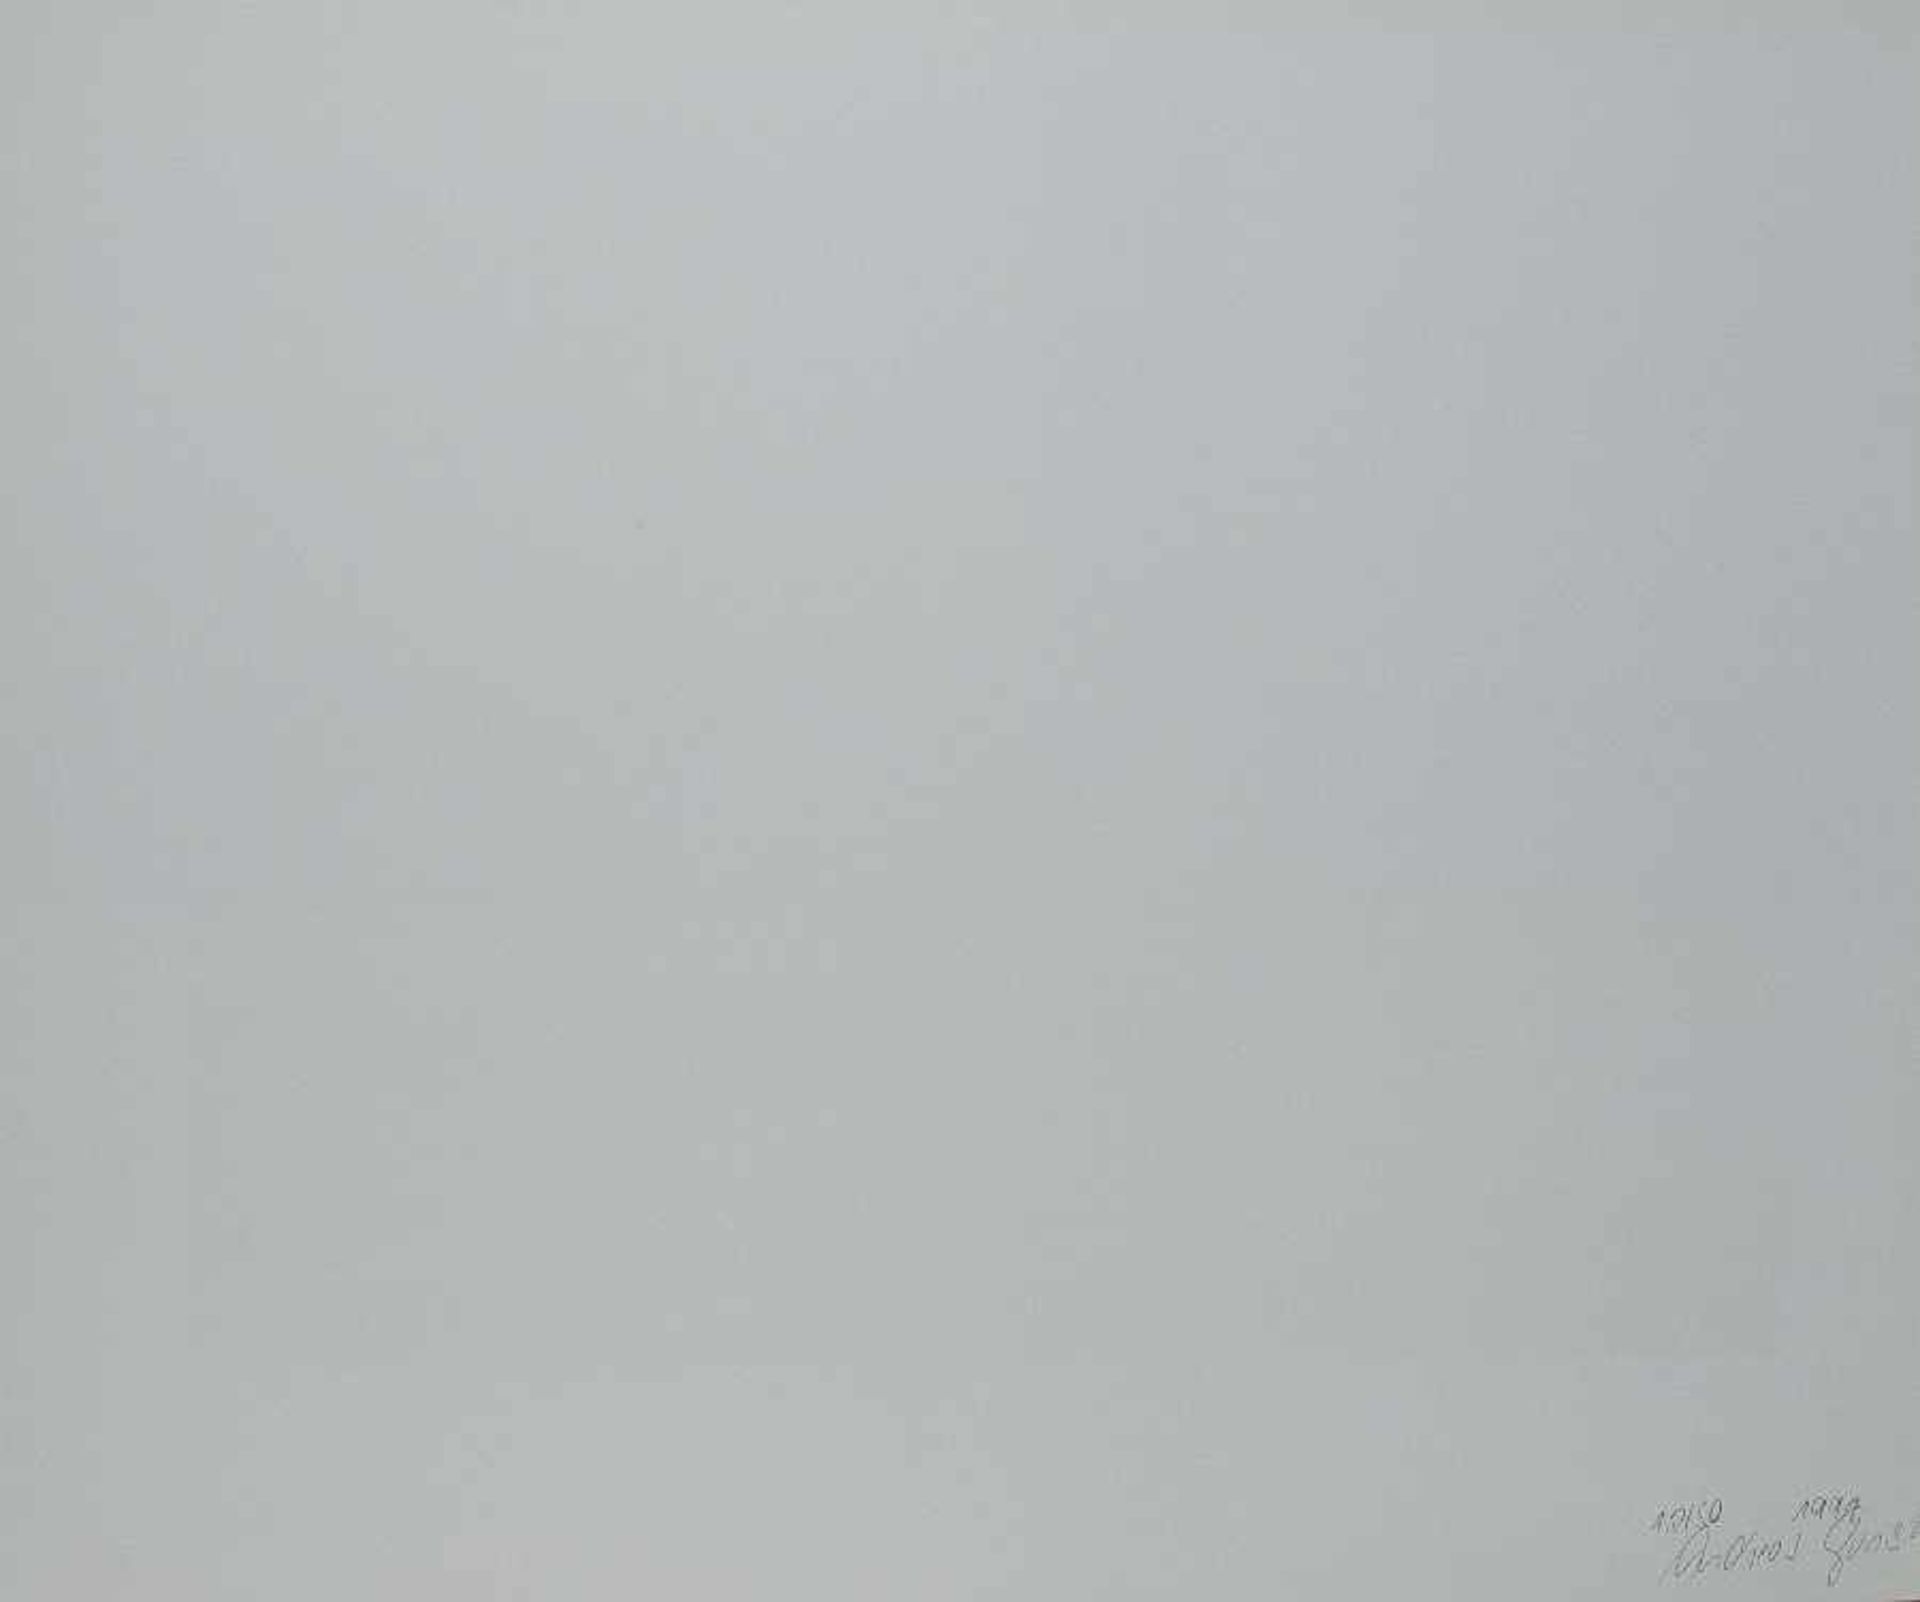 Andreas Gursky u. a. Landschaften (Mappe Kunstring Folkwang Essen) 6 Offsetlithografien auf Papier - Bild 2 aus 7